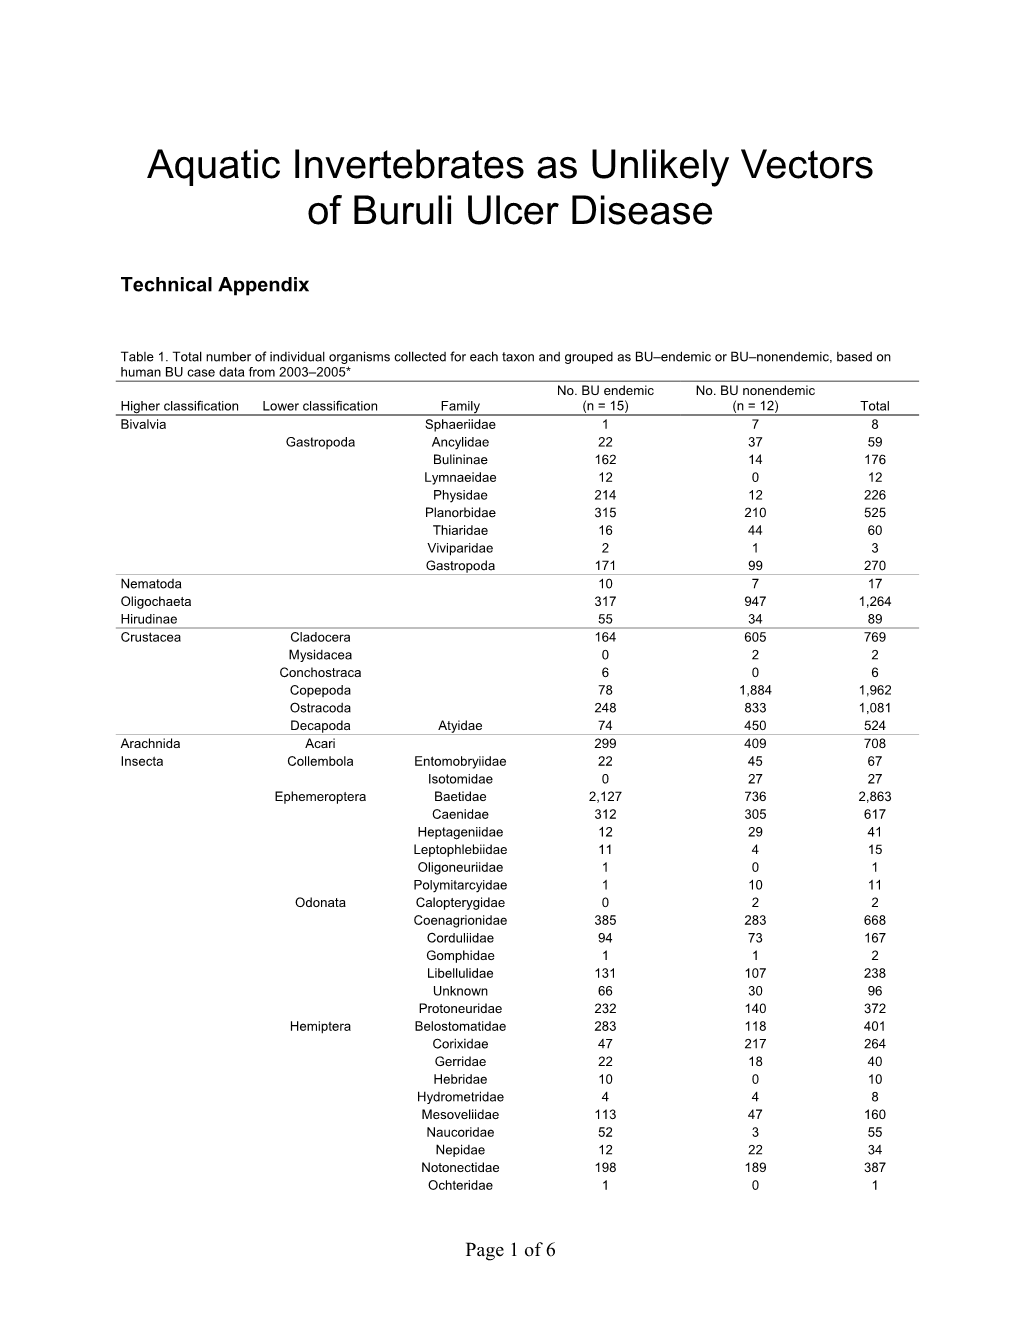 Aquatic Invertebrates As Unlikely Vectors of Buruli Ulcer Disease